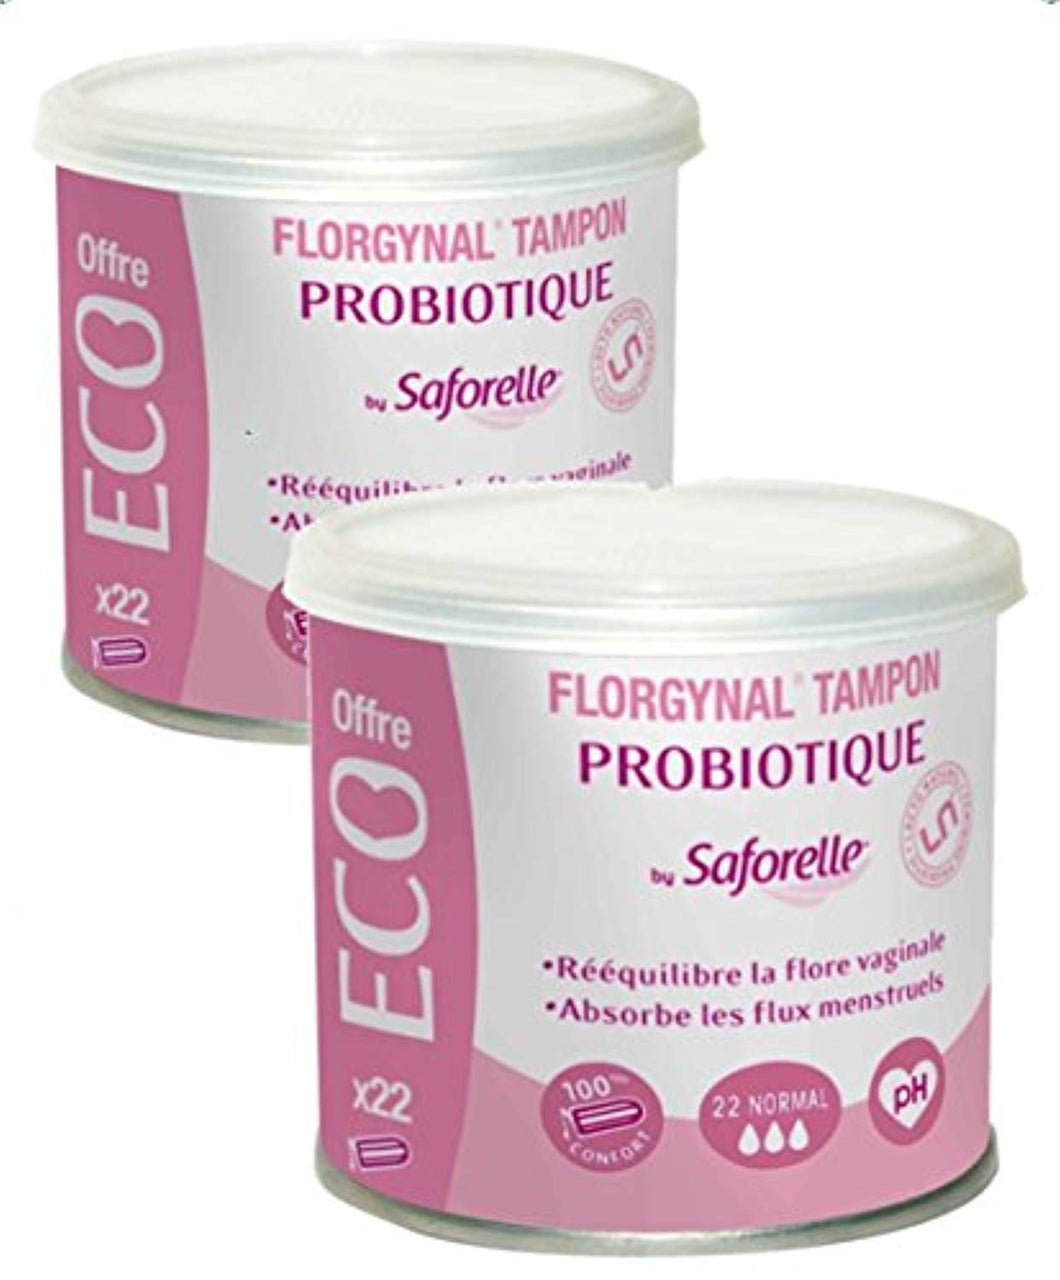 Saforelle - Florgynal - Tampon pèriodique Probiotique NORMAL - Boite de 22 Tampons - Lot de 2 Boites